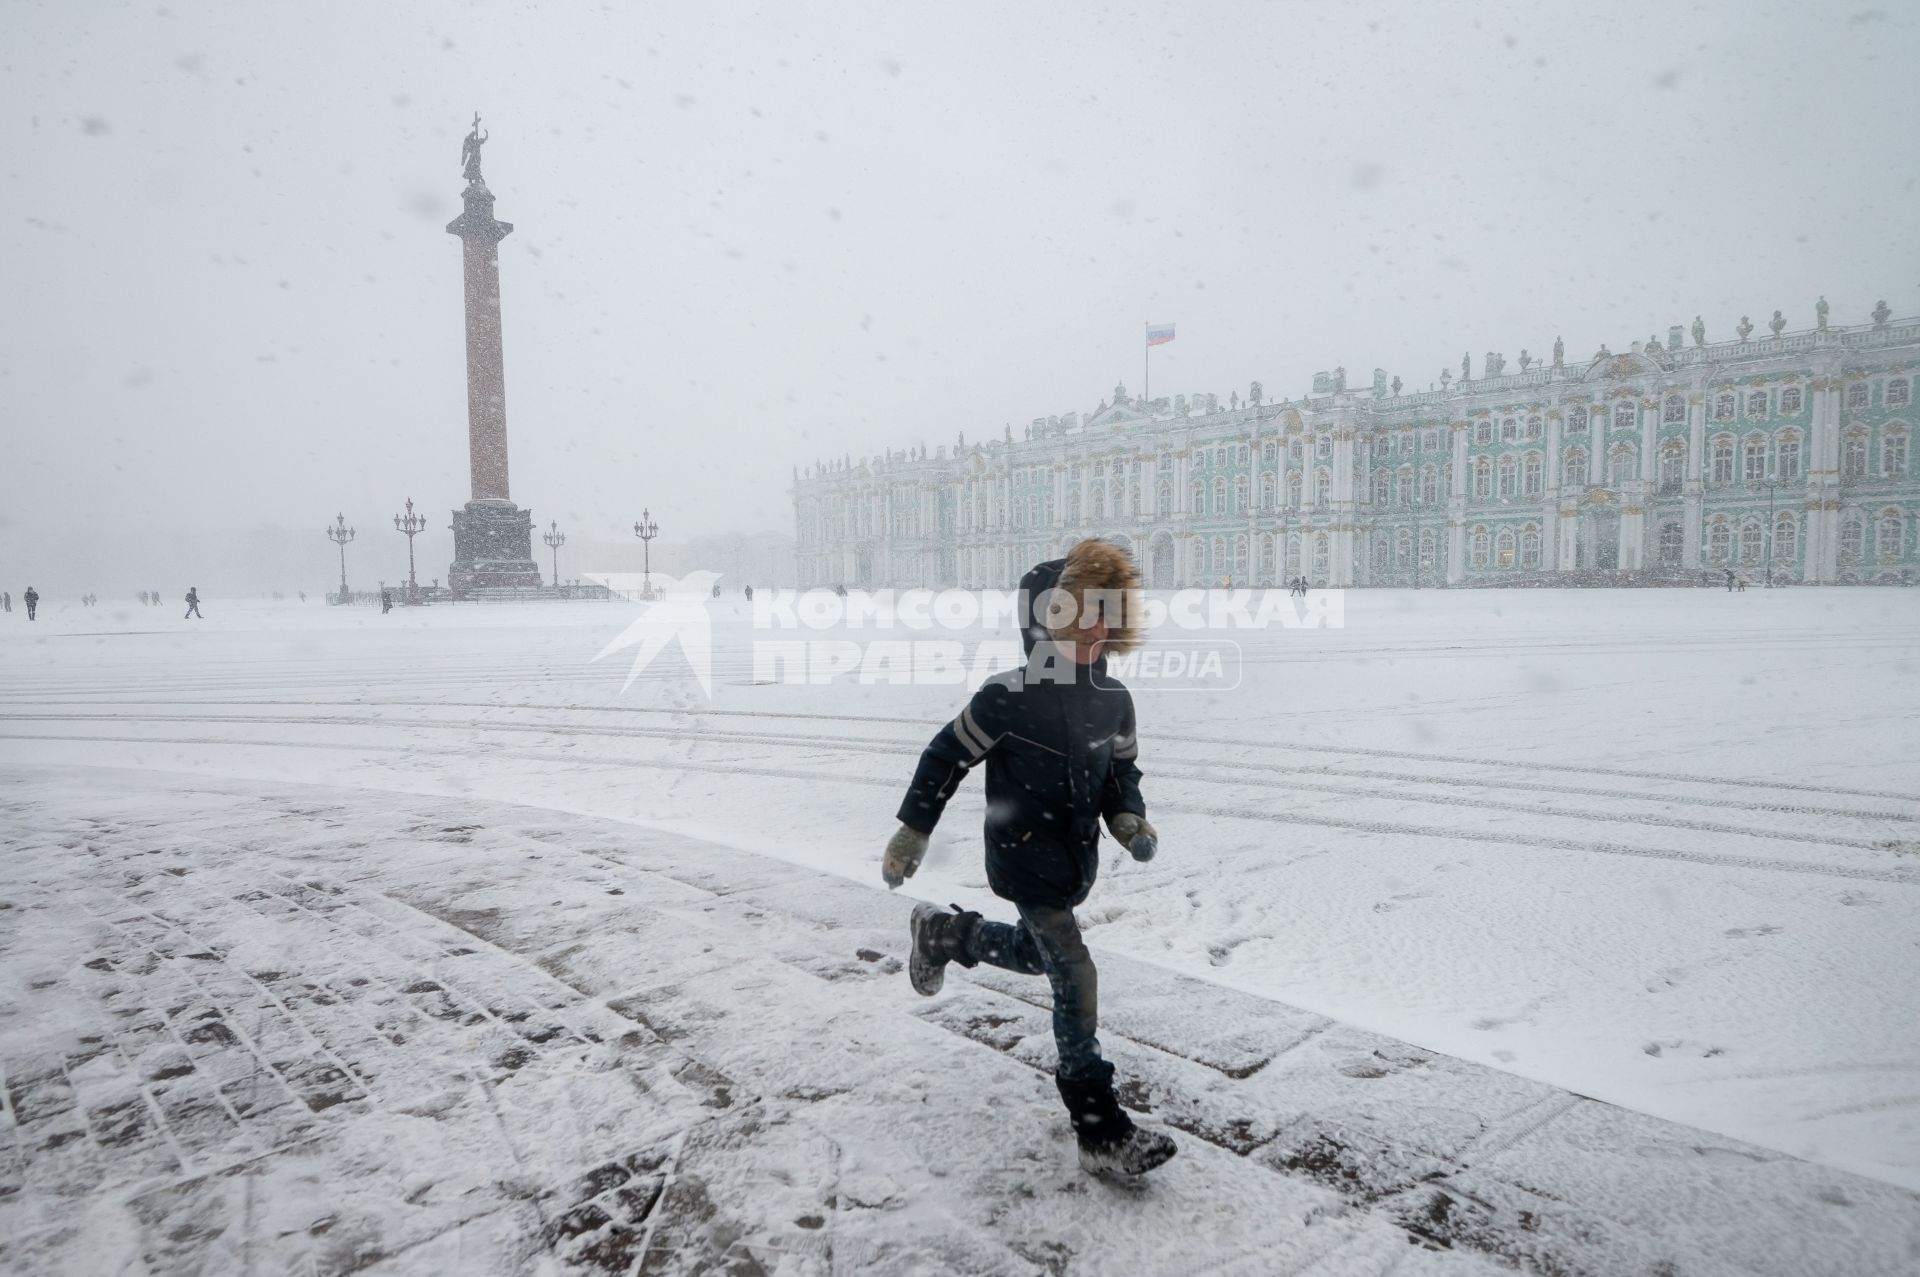 Санкт-Петербург. Прохожие на улице города во время снежного шторма.